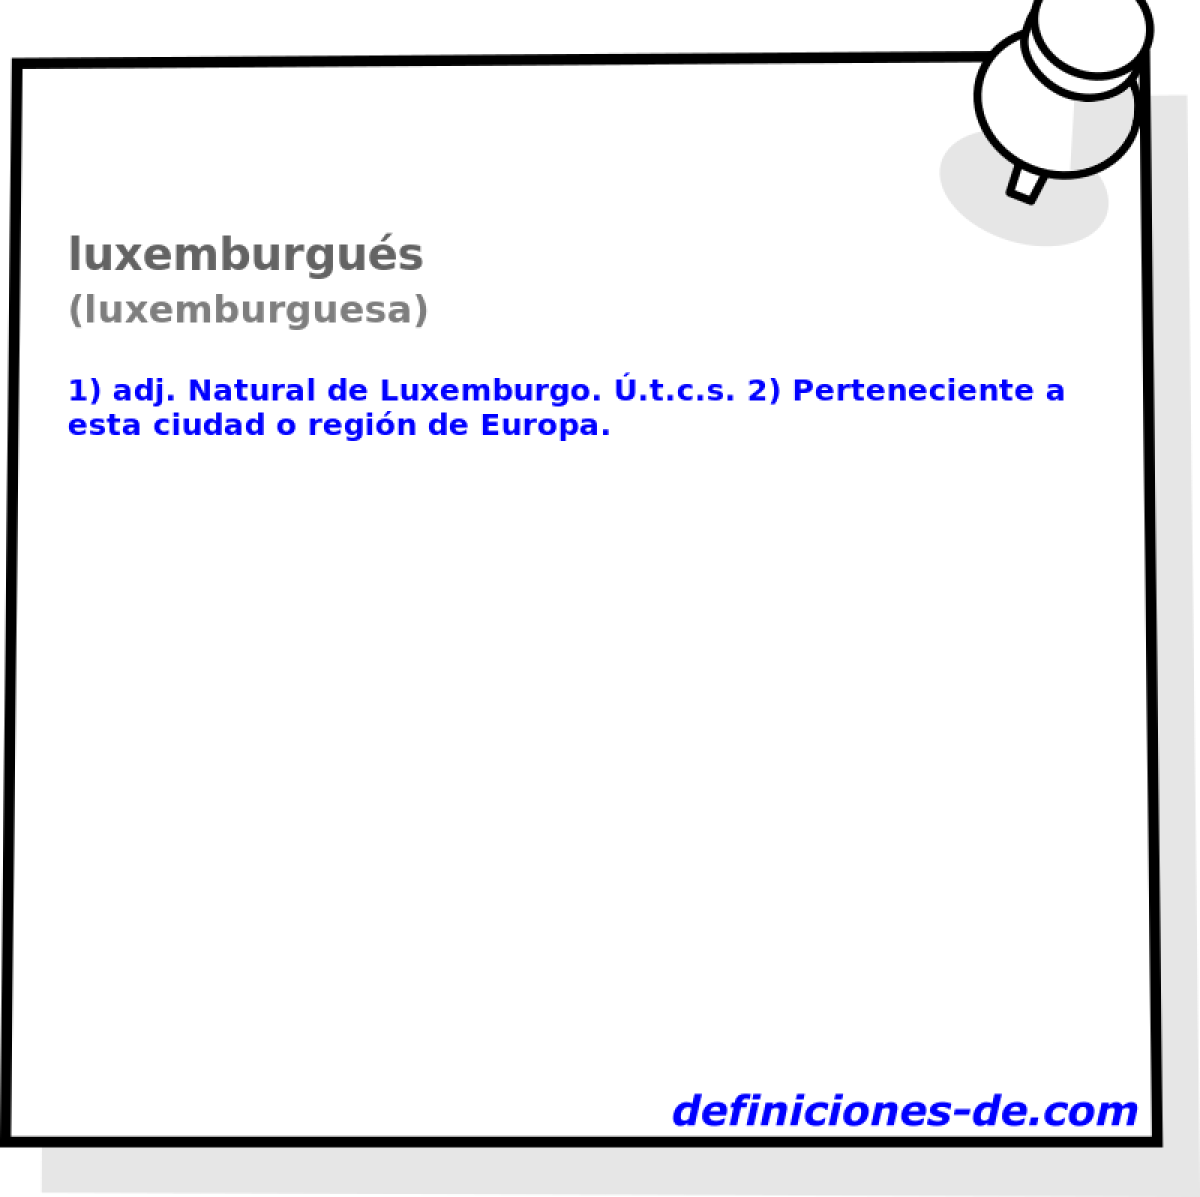 luxemburgus (luxemburguesa)